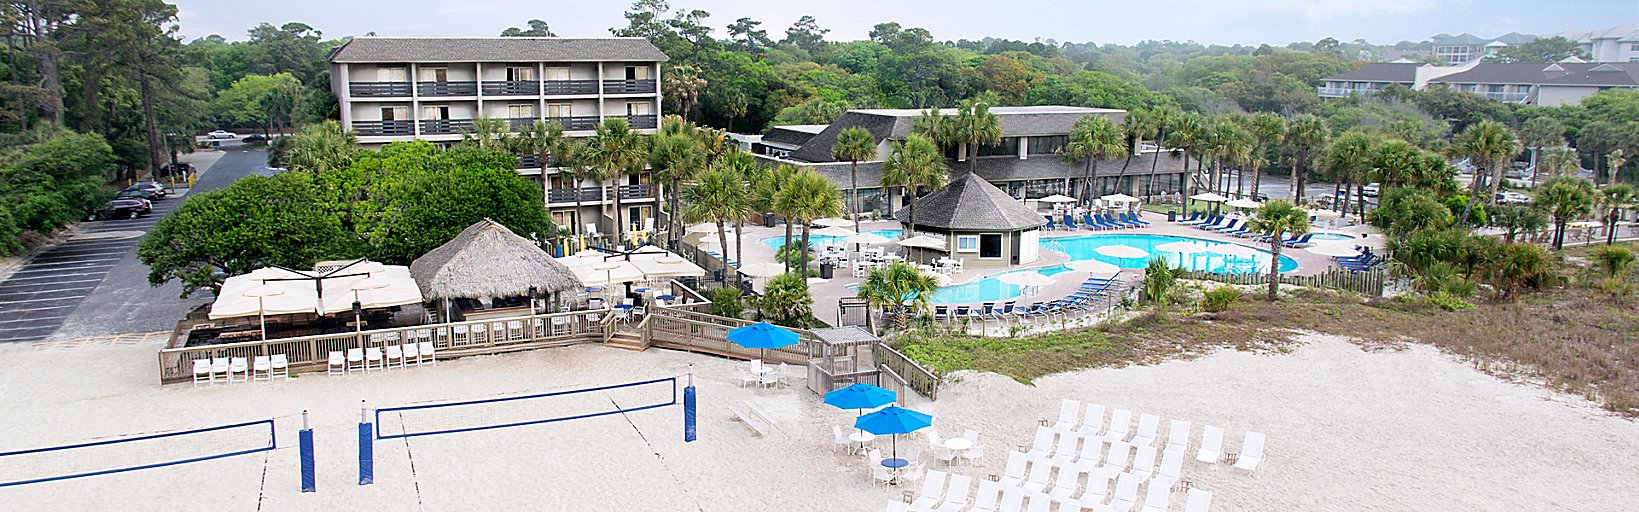 Holiday Inn Resort Beach House Buchen Sie Ihren Aufenthalt In